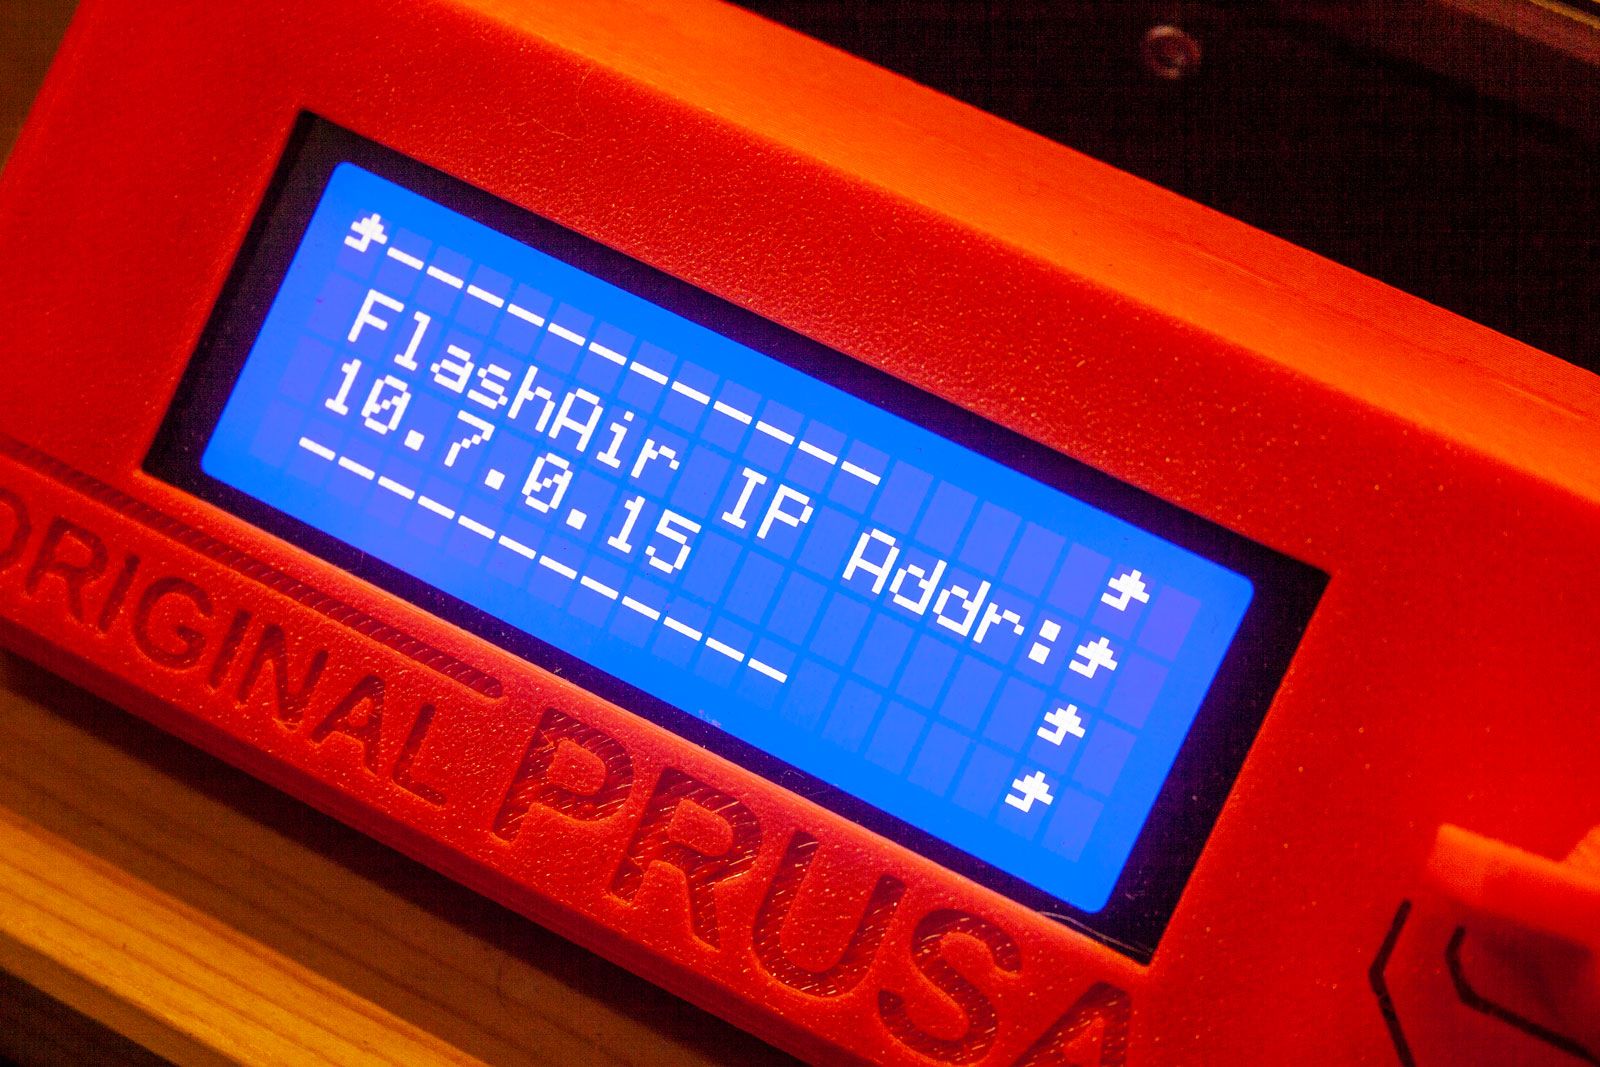 to set up wireless printing with Toshiba cards - Original Prusa 3D Printers